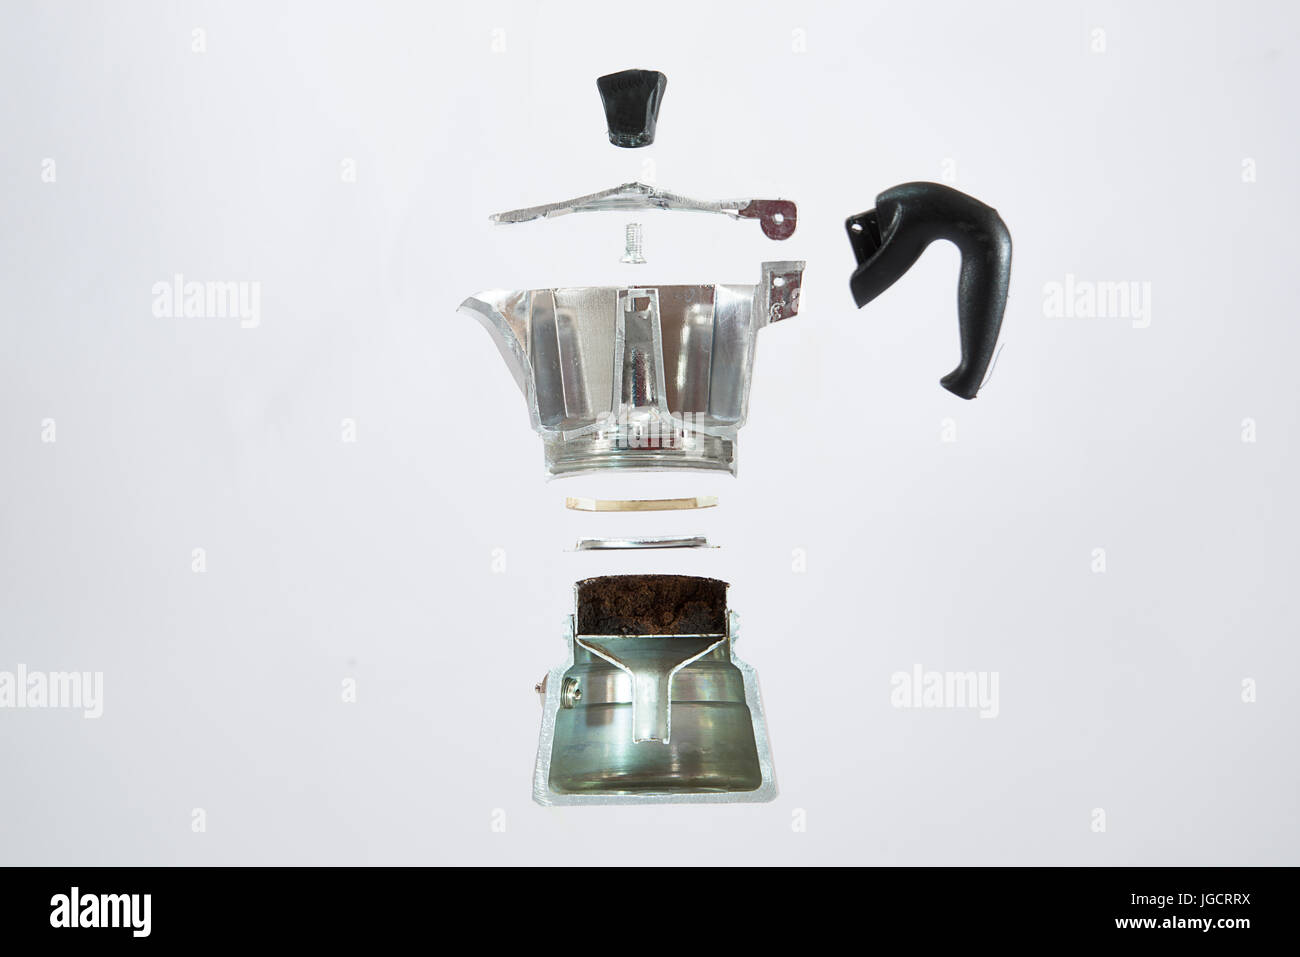 Querschnitt-Schichten eine Espresso-Kaffeemaschine Stockfotografie - Alamy